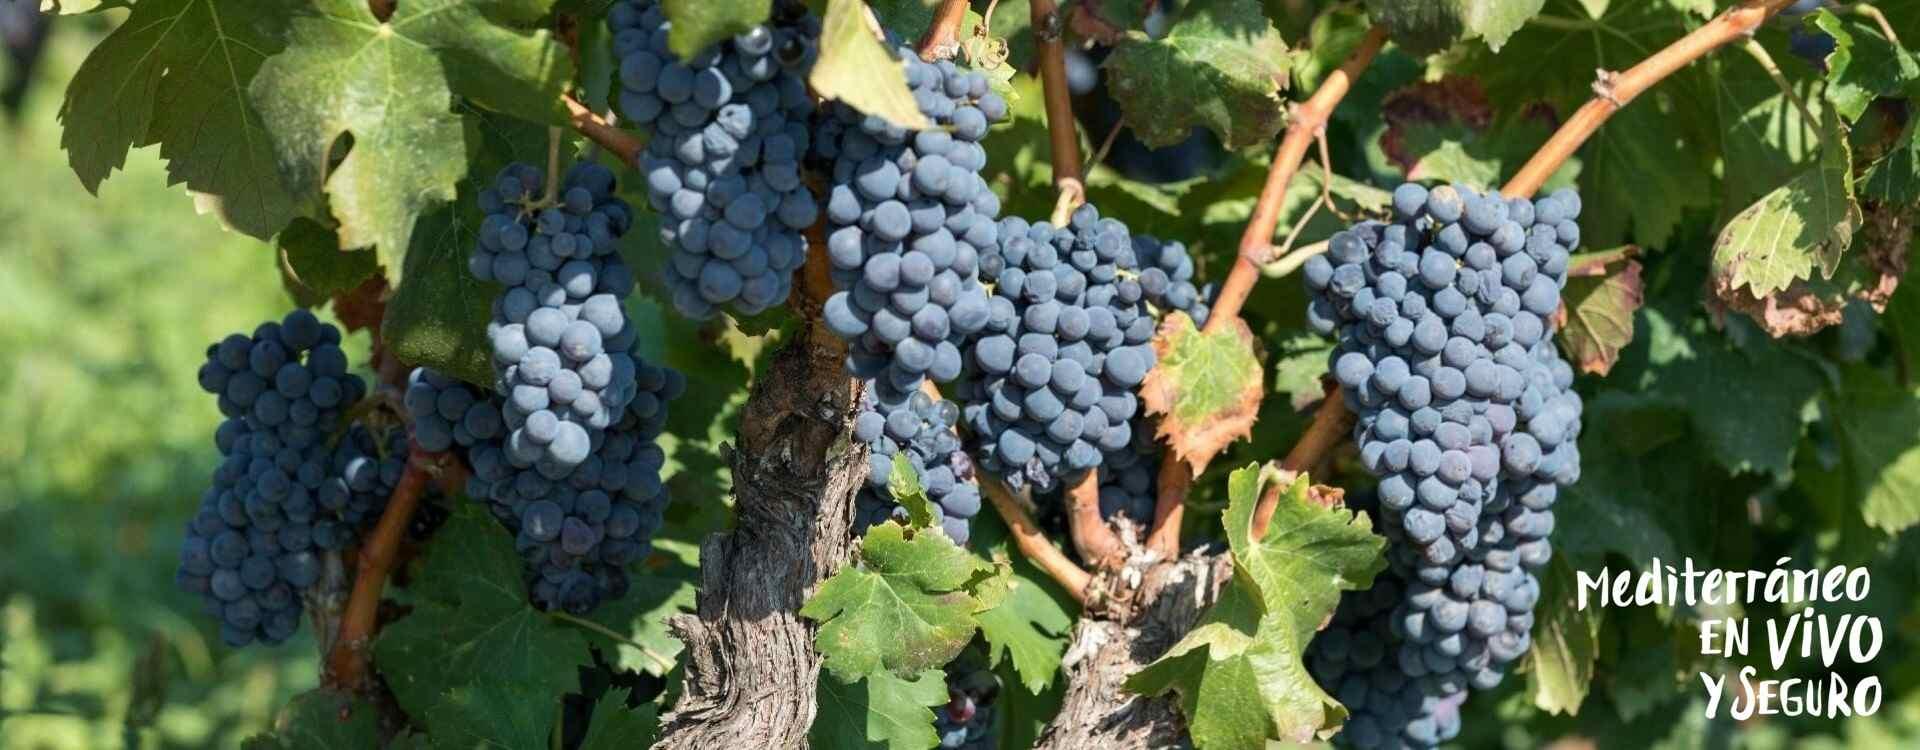 Imatge del raïm en les vinyes de Llíber	